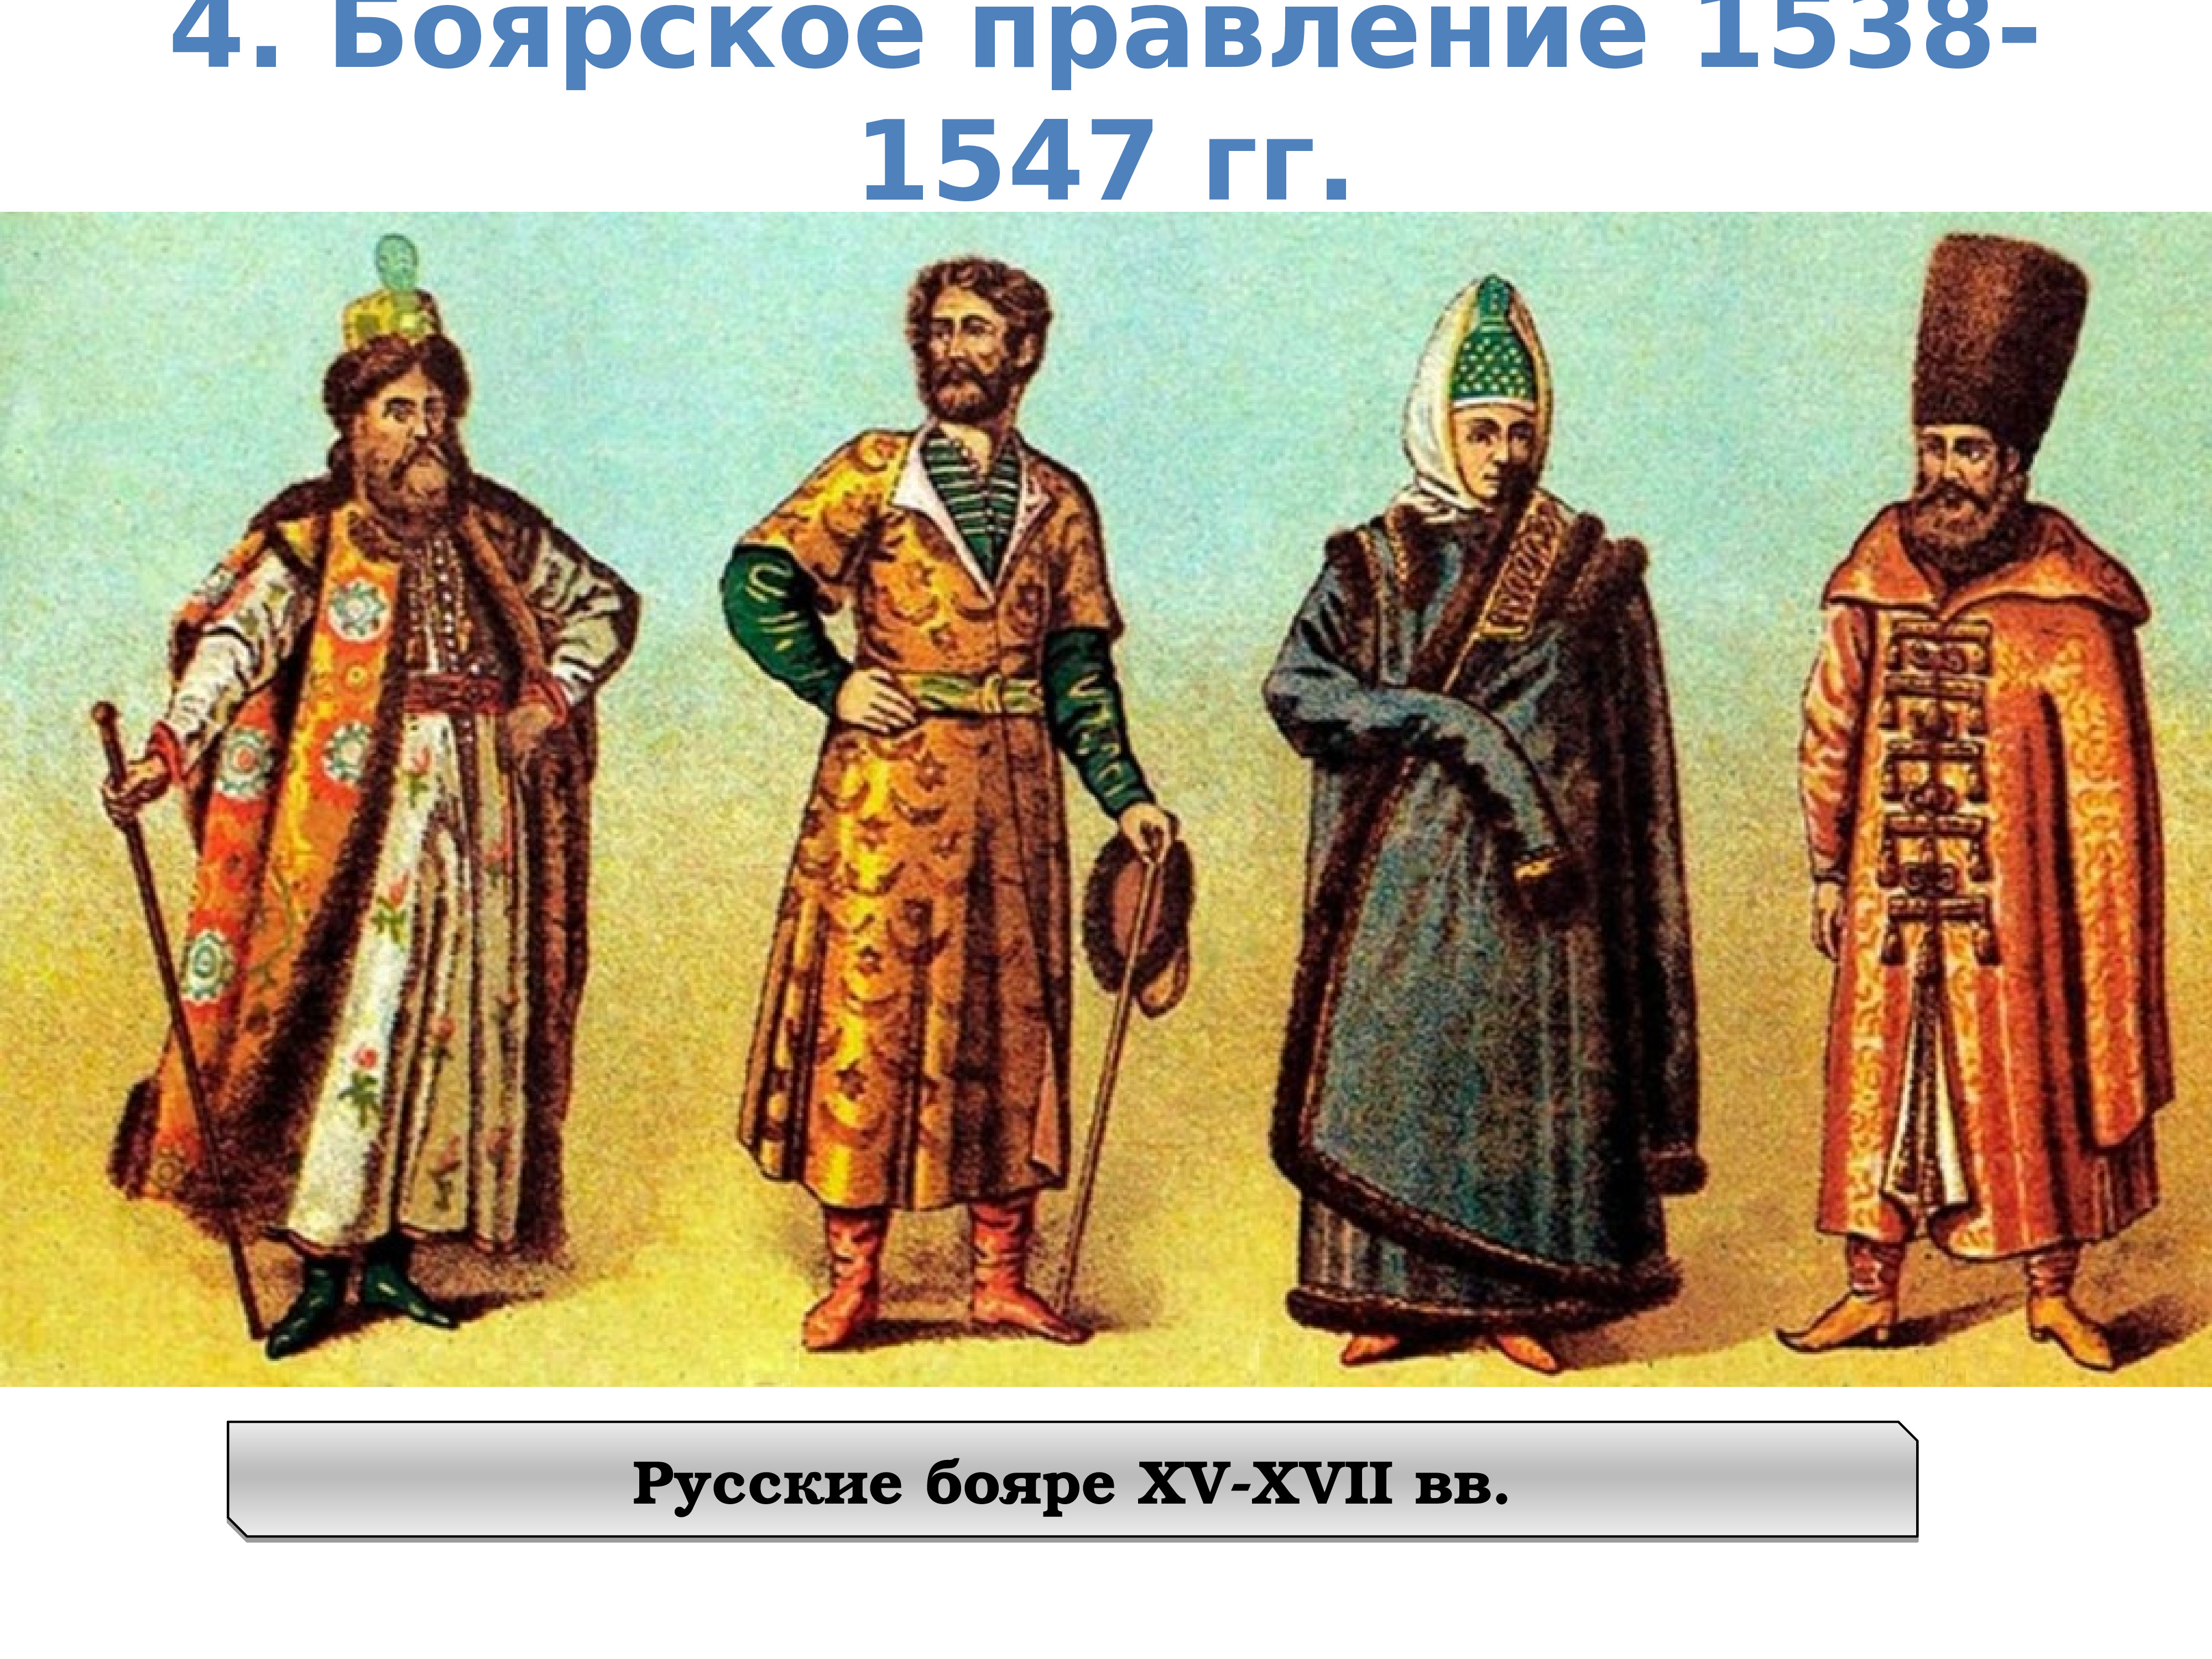 Костюм 17 века россии